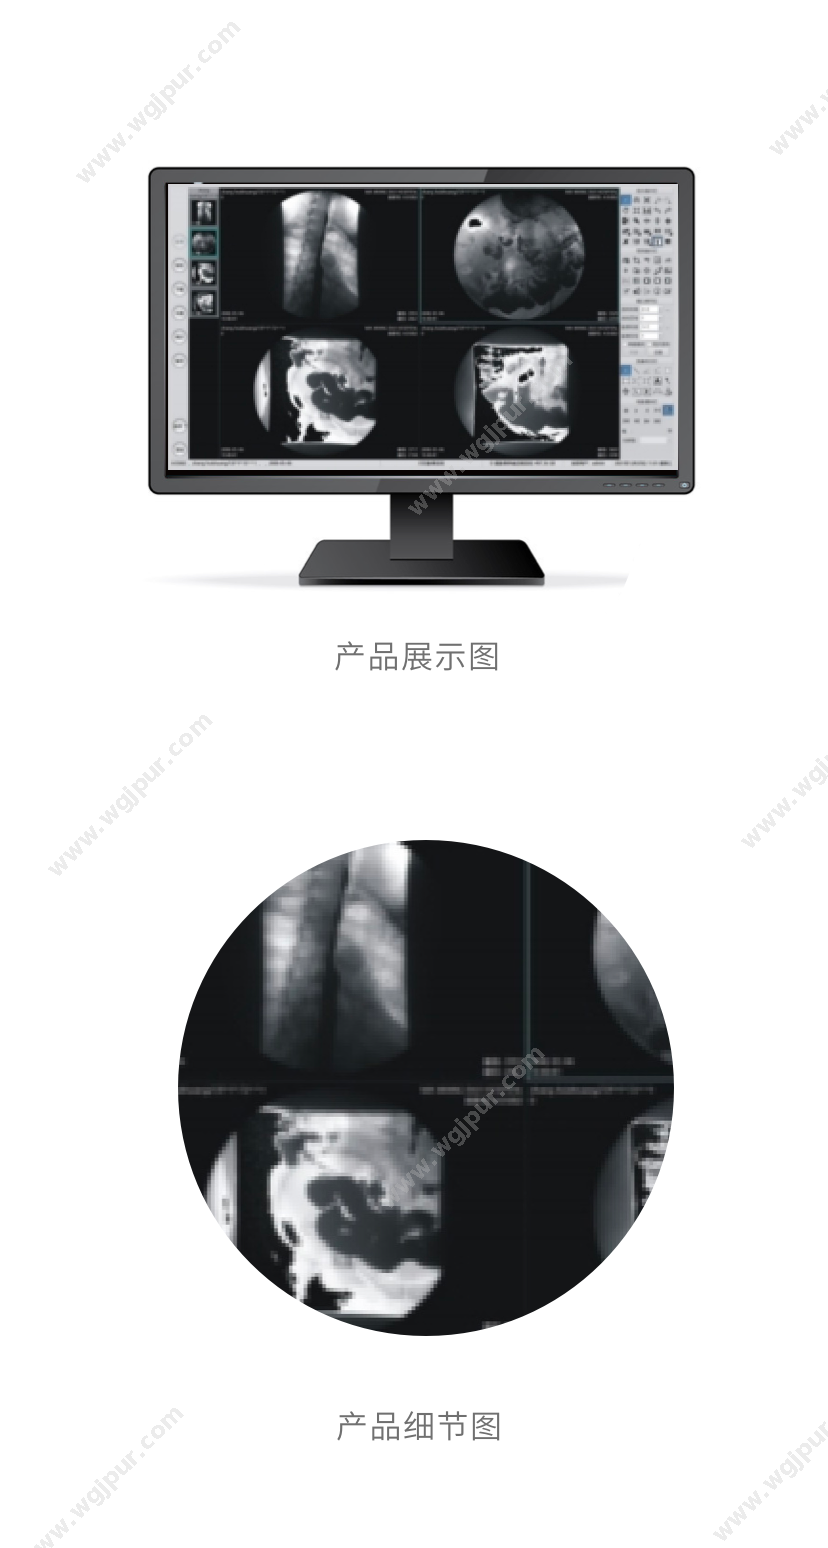 联晰医疗 LIANXI-PACS（软件+硬件） 放射影像